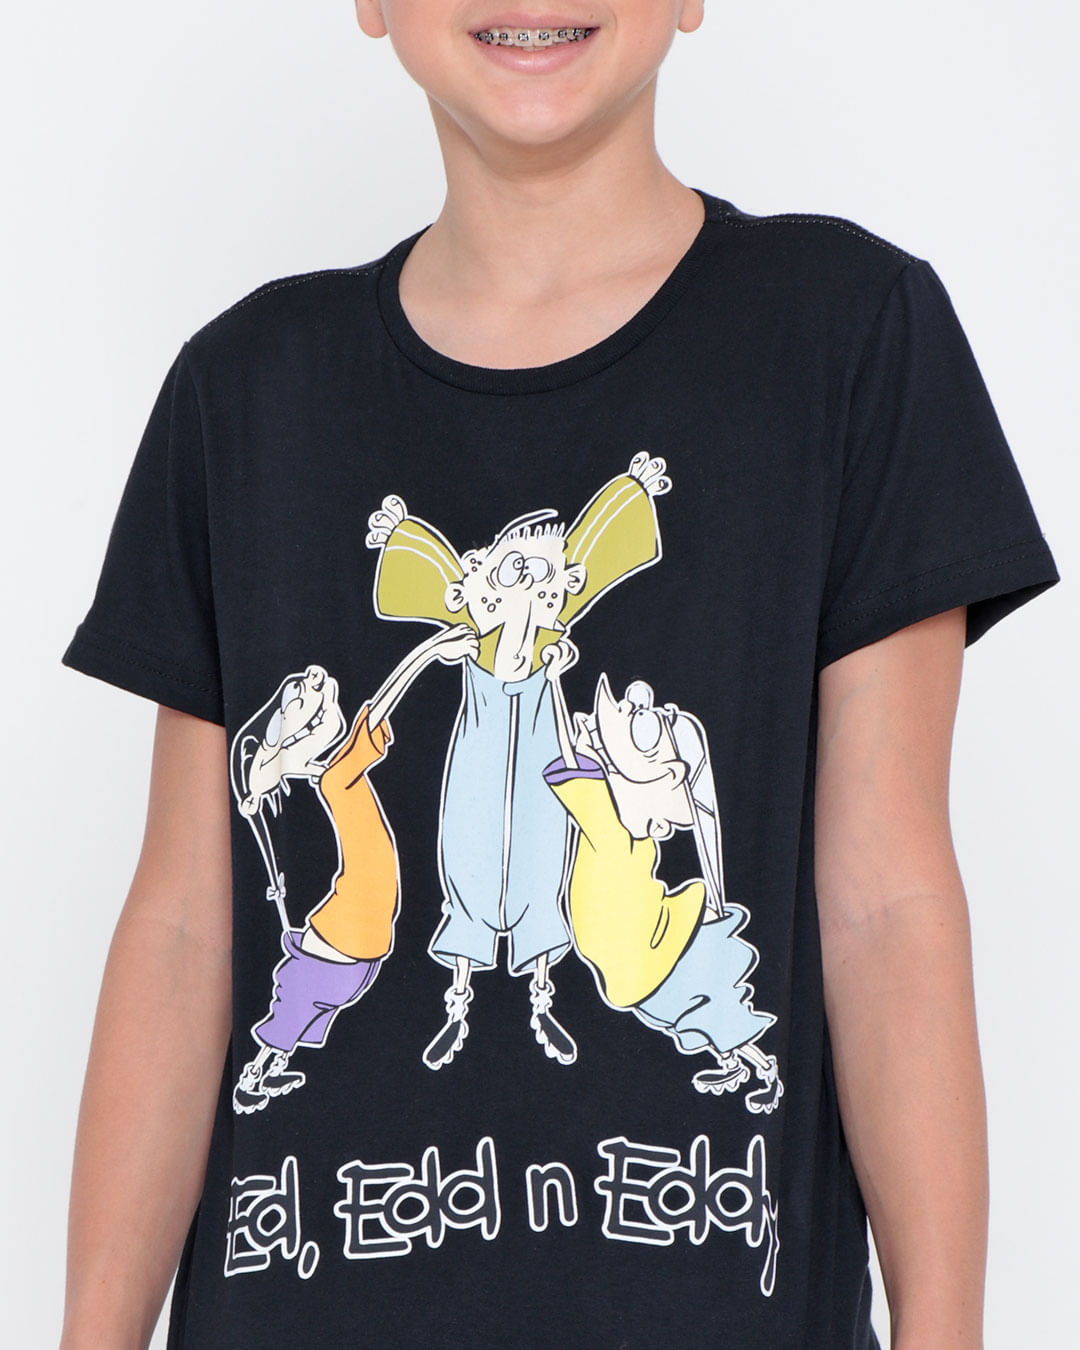 Camiseta Juvenil Cartoon Network Du Dudu E Edu Preta